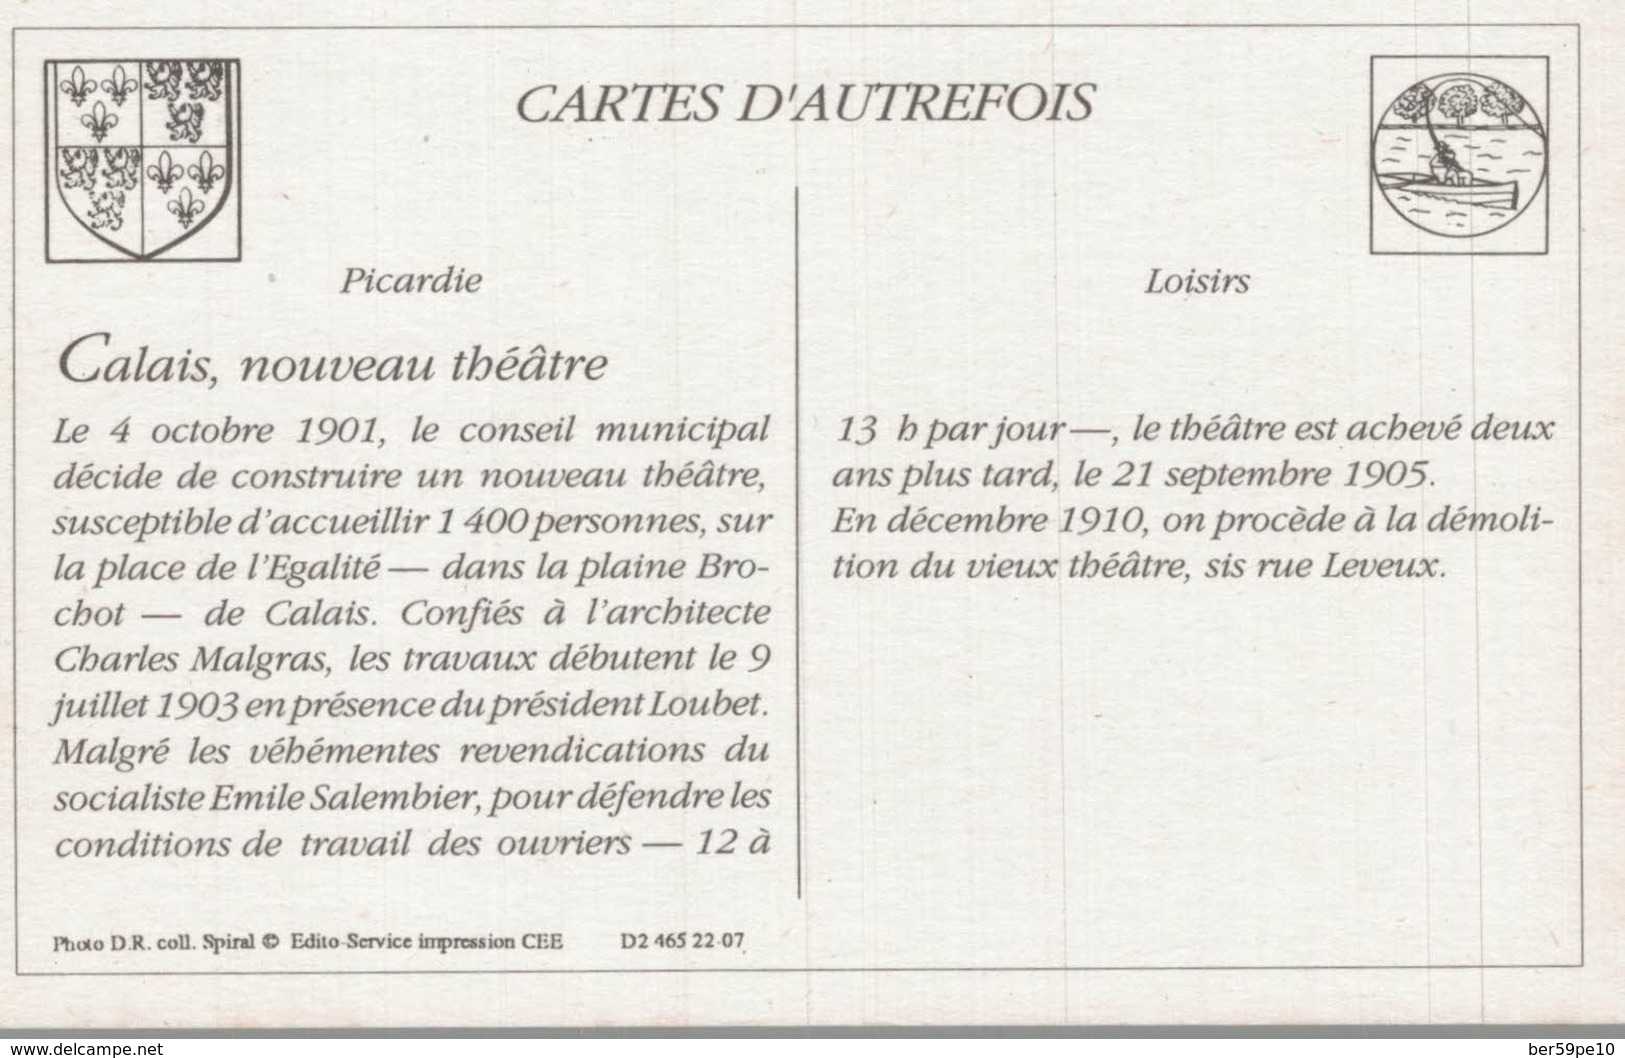 CARTES D'AUTREFOIS  LOISIRS  PICARDIE  CALAIS NOUVEAU THEATRE - Picardie